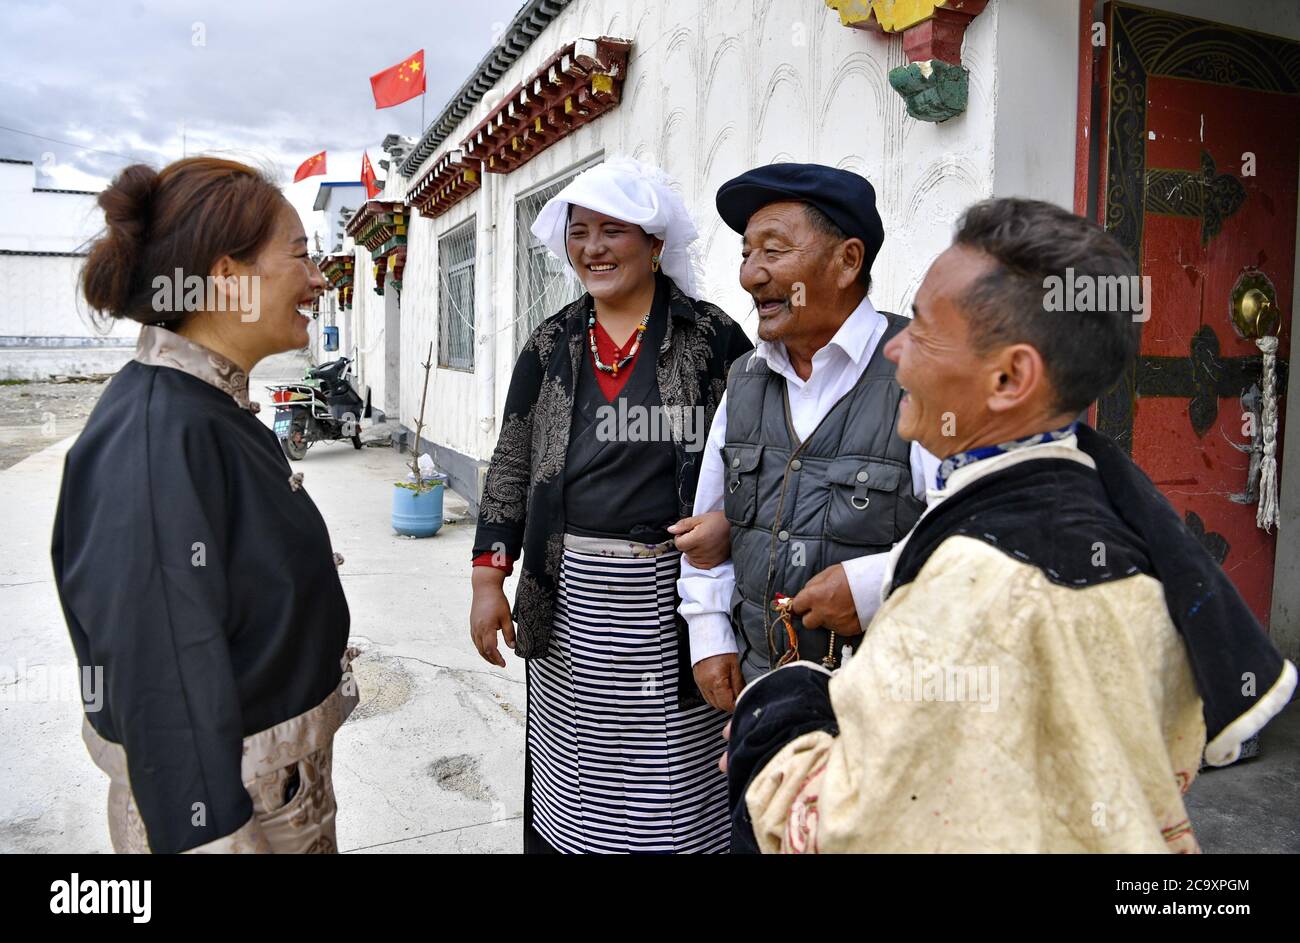 (200803) -- LHASA, 3. August 2020 (Xinhua) -- EIN Dorfbeamter, der für die Frauenarbeit zuständig ist (1. L), spricht mit Dorfbewohnern des Umzugsdorfes Caiqutang in der Gemeinde Yangbajain, Landkreis Damxung, südwestlich der Autonomen Region Tibet, 2. August 2020. Die in den letzten Jahren durchgeführten Standortverlagerungen zur Armutsbekämpfung haben zur Förderung der ländlichen Revitalisierung in der Autonomen Region Tibet beigetragen. So bietet das Umsiedlungsdorf Caiqutang, das Ende 2017 seine ersten Umsiedler erlebte, heute 683 Einwohnern, die aus weniger liebenswürdigen alpinen Gebieten umgezogen sind, bessere Versorgung und Gesundheitsversorgung. Der Umzug Stockfoto